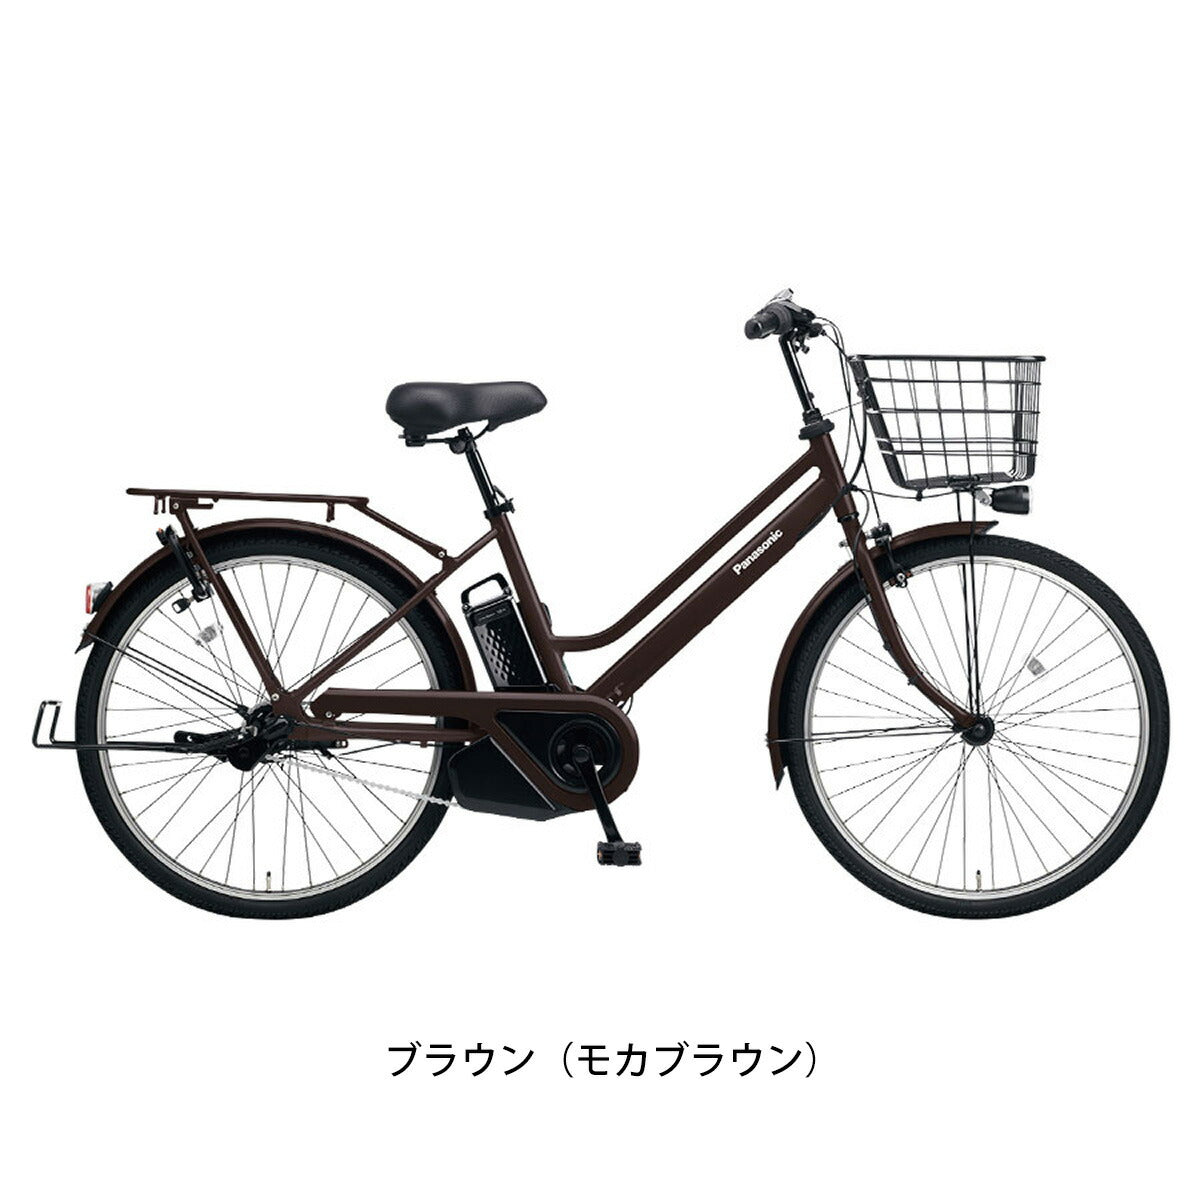 Panasonic ティモS 26インチ - 電動アシスト自転車